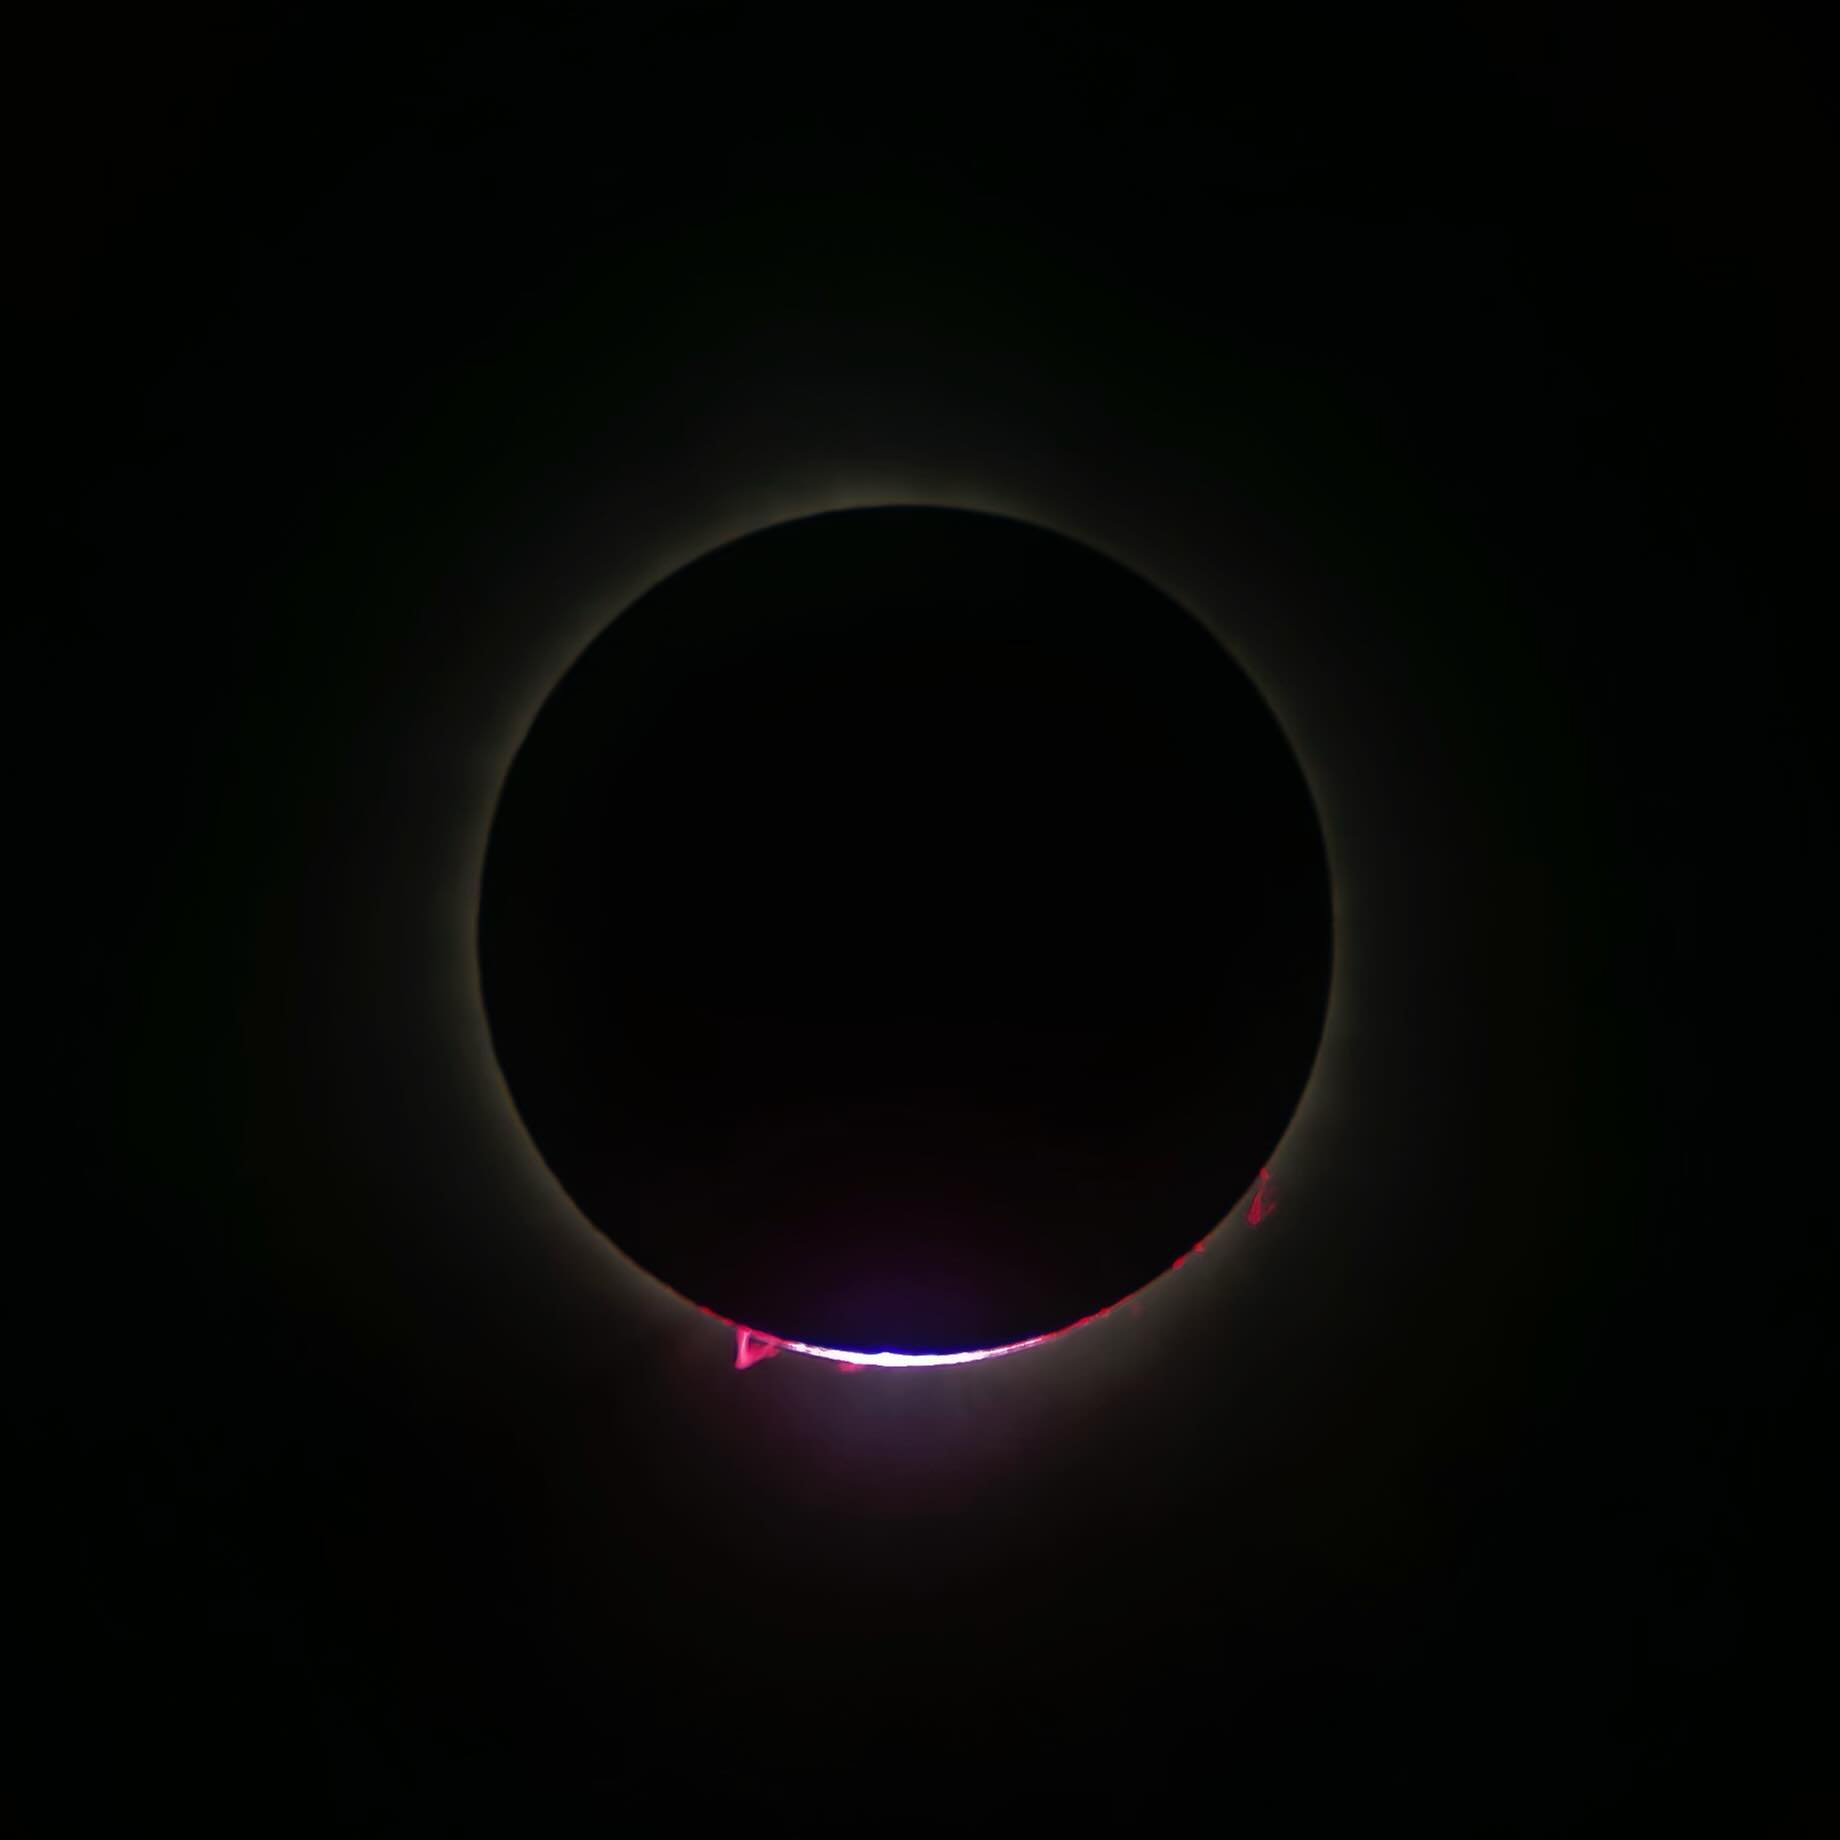 Eclipse by Jeremy Yan